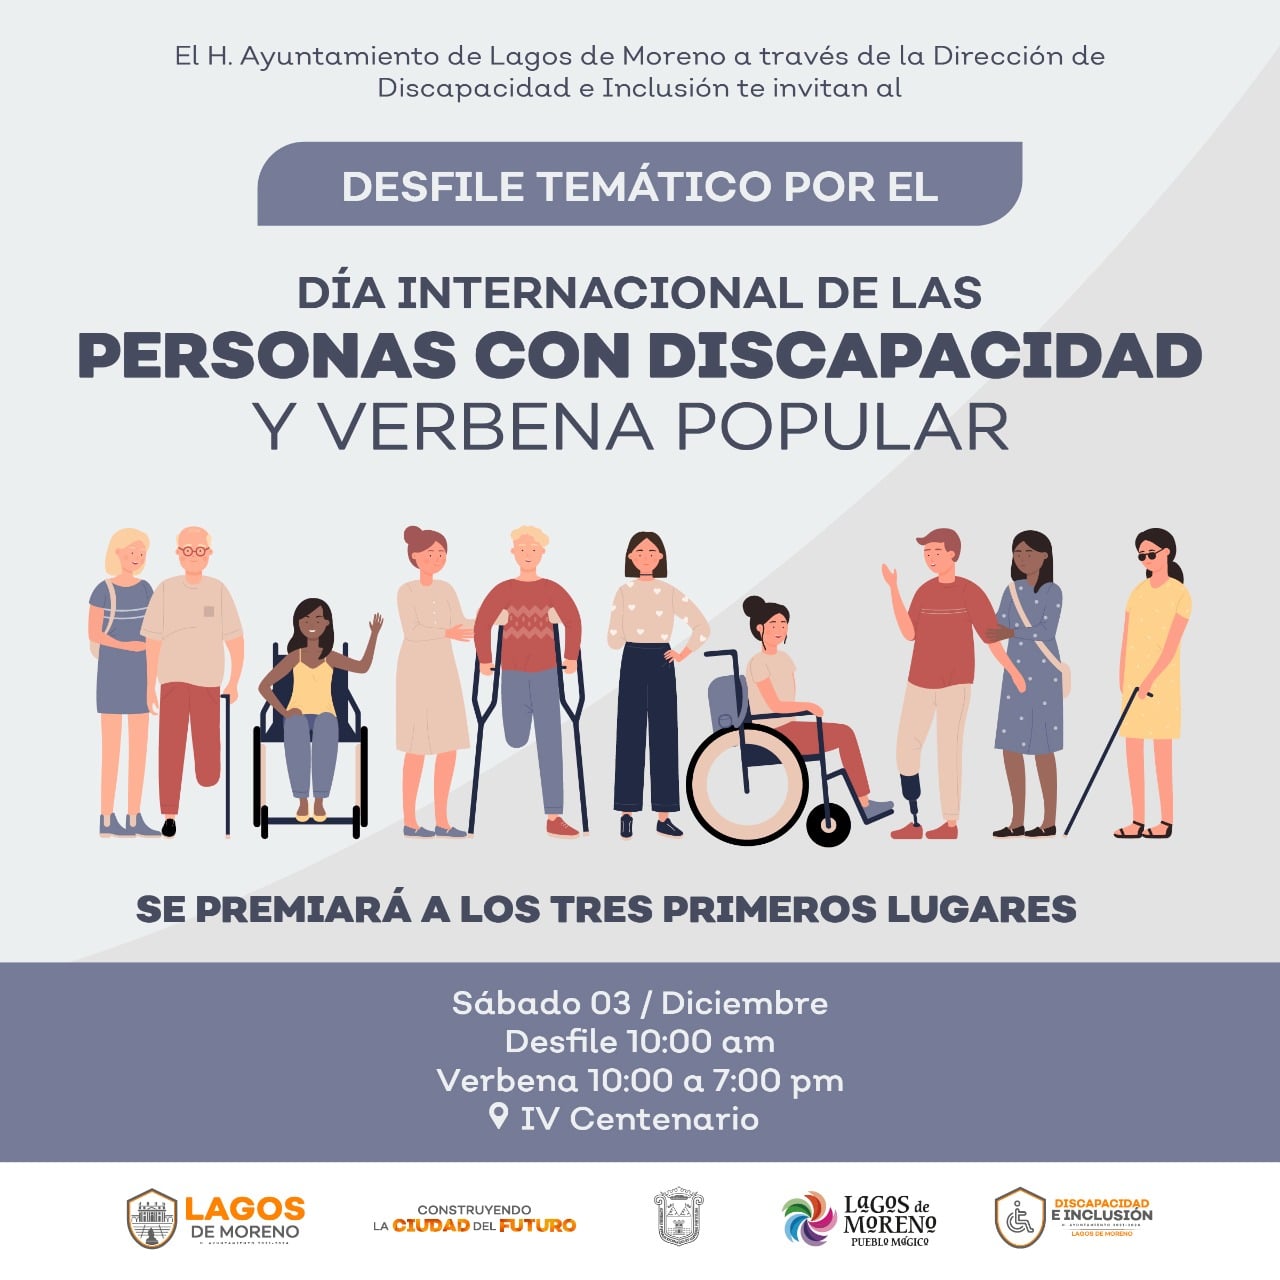 Realizarán desfile y verbena popular por Día Internacional de las Personas con Discapacidad